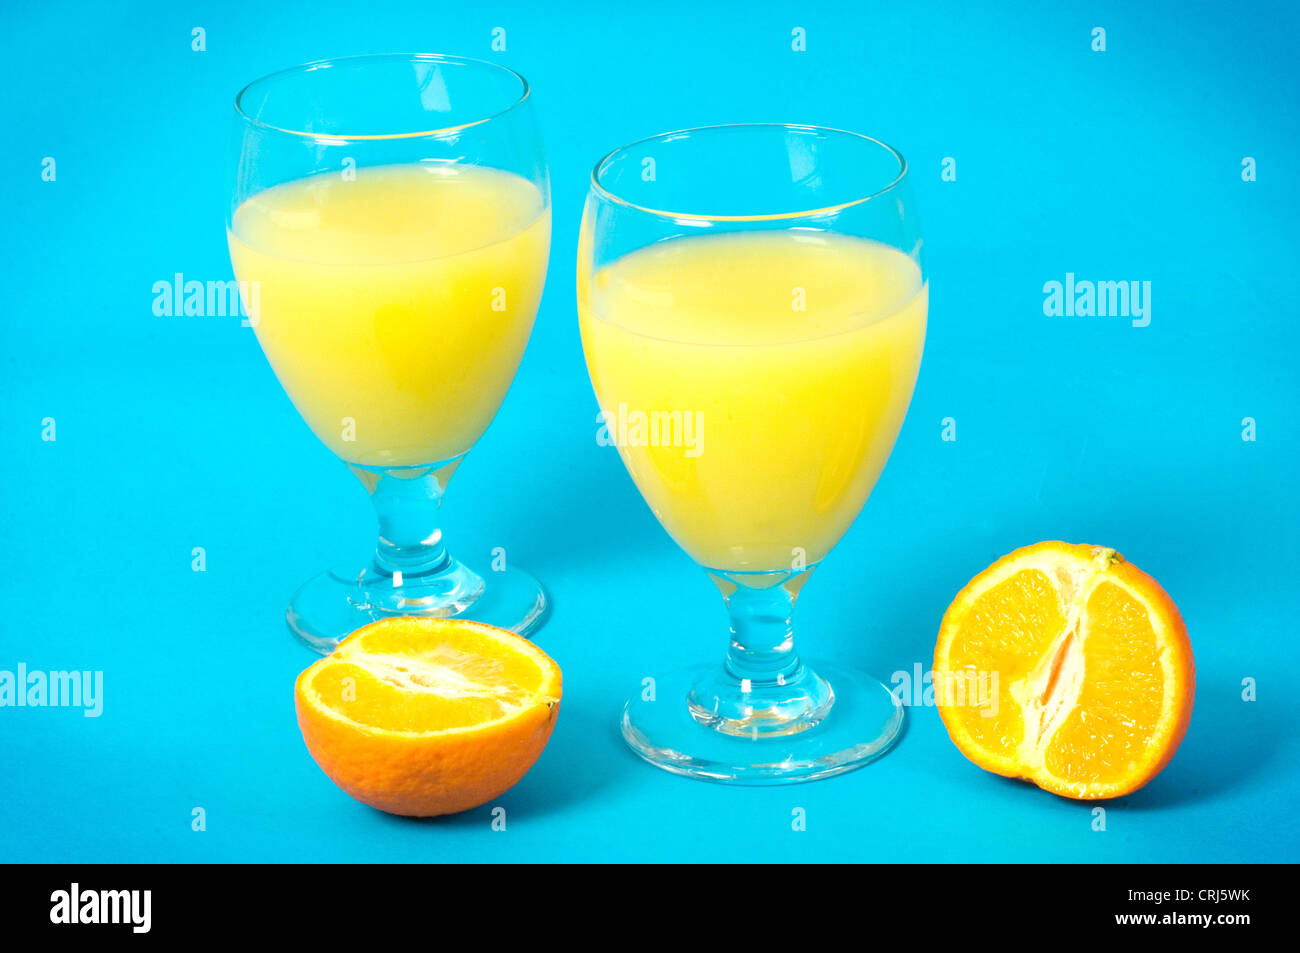 Verres de jus d'orange et oranges sur un fond bleu. L'orange est une excellente source de vitamine C (acide ascorbique) et de potassium, ce qui peut aider à lutter contre le rhume et peut également aider à protéger votre cœur contre les dommages. C'est aussi une importante source naturelle d'acide folique (B9) qui est recommandée pour les femmes qui sont enceintes. Une carence en vi Banque D'Images